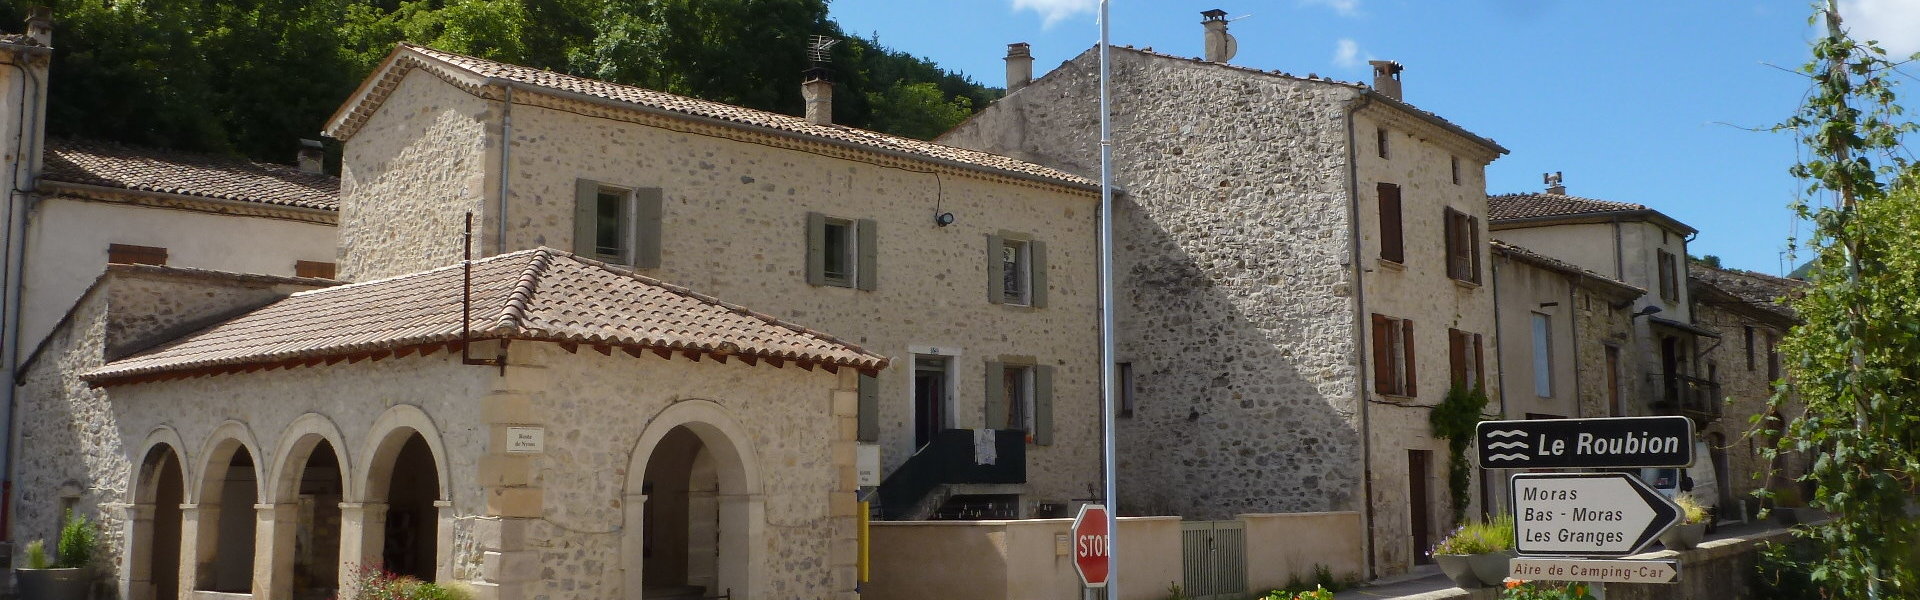 Hébergements - Commune de Bouvières - Département de la Drôme